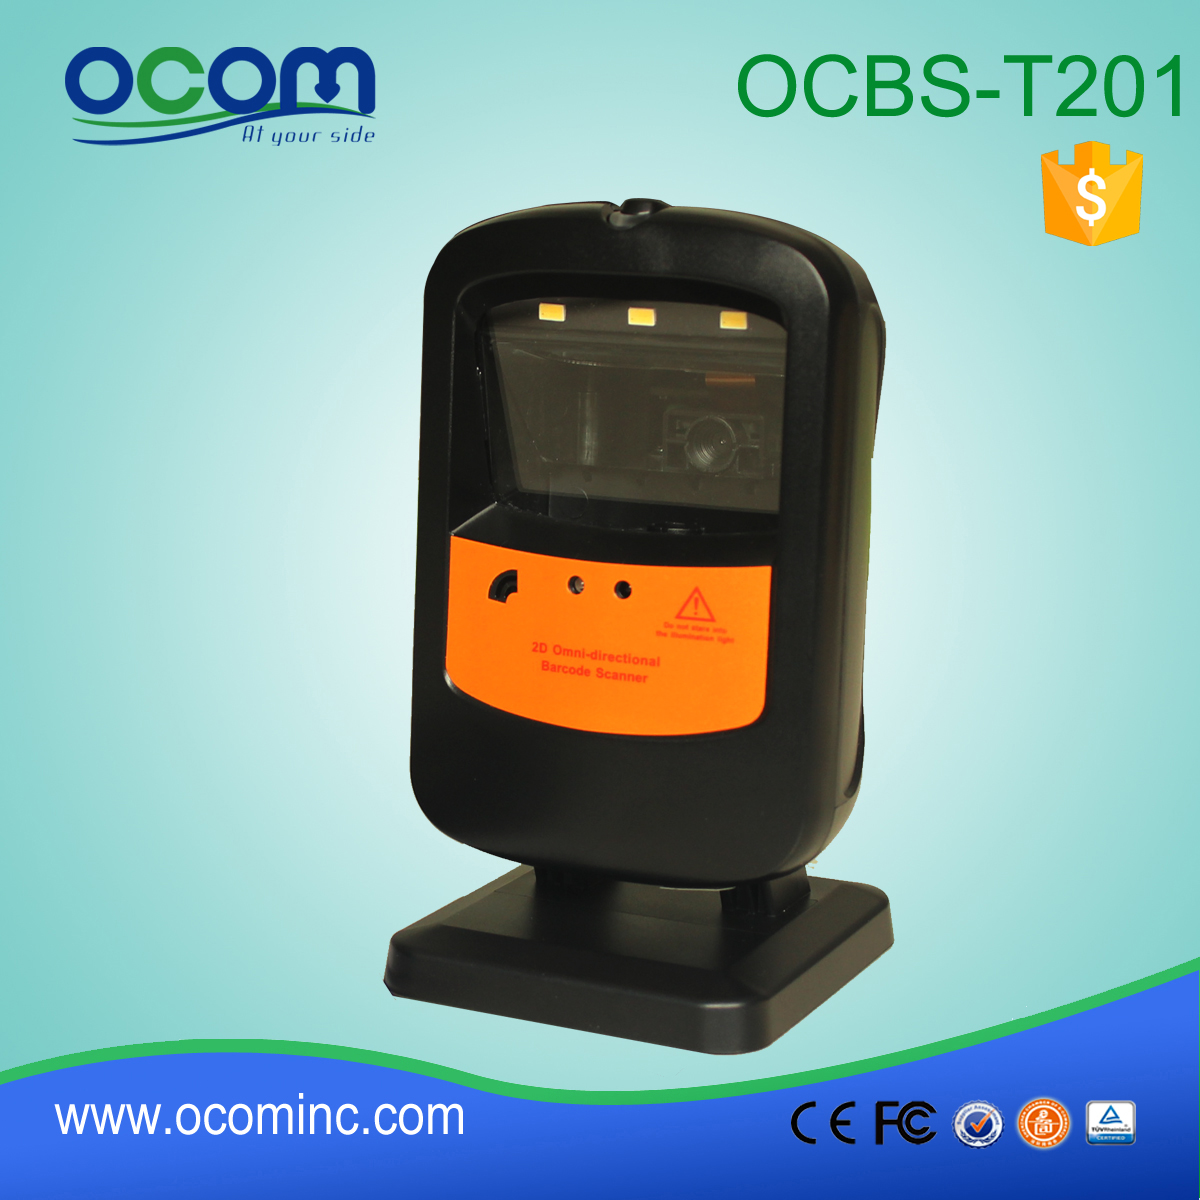 OCBS-T201: wielokierunkowy skaner kodów kreskowych cena, moduł czytnika kodów kreskowych